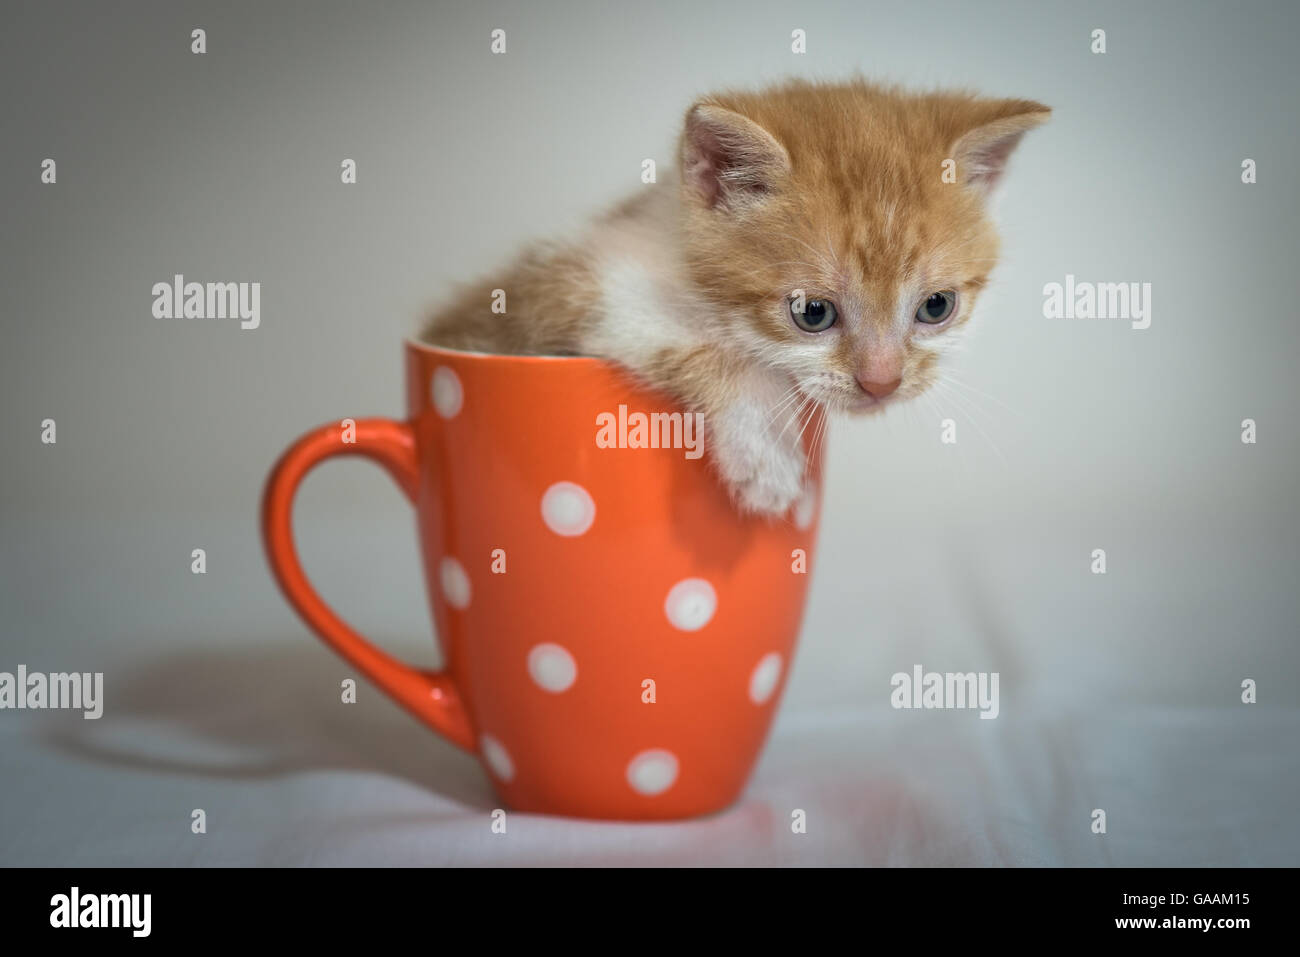 Cute little kitten in orange cup Stock Photo